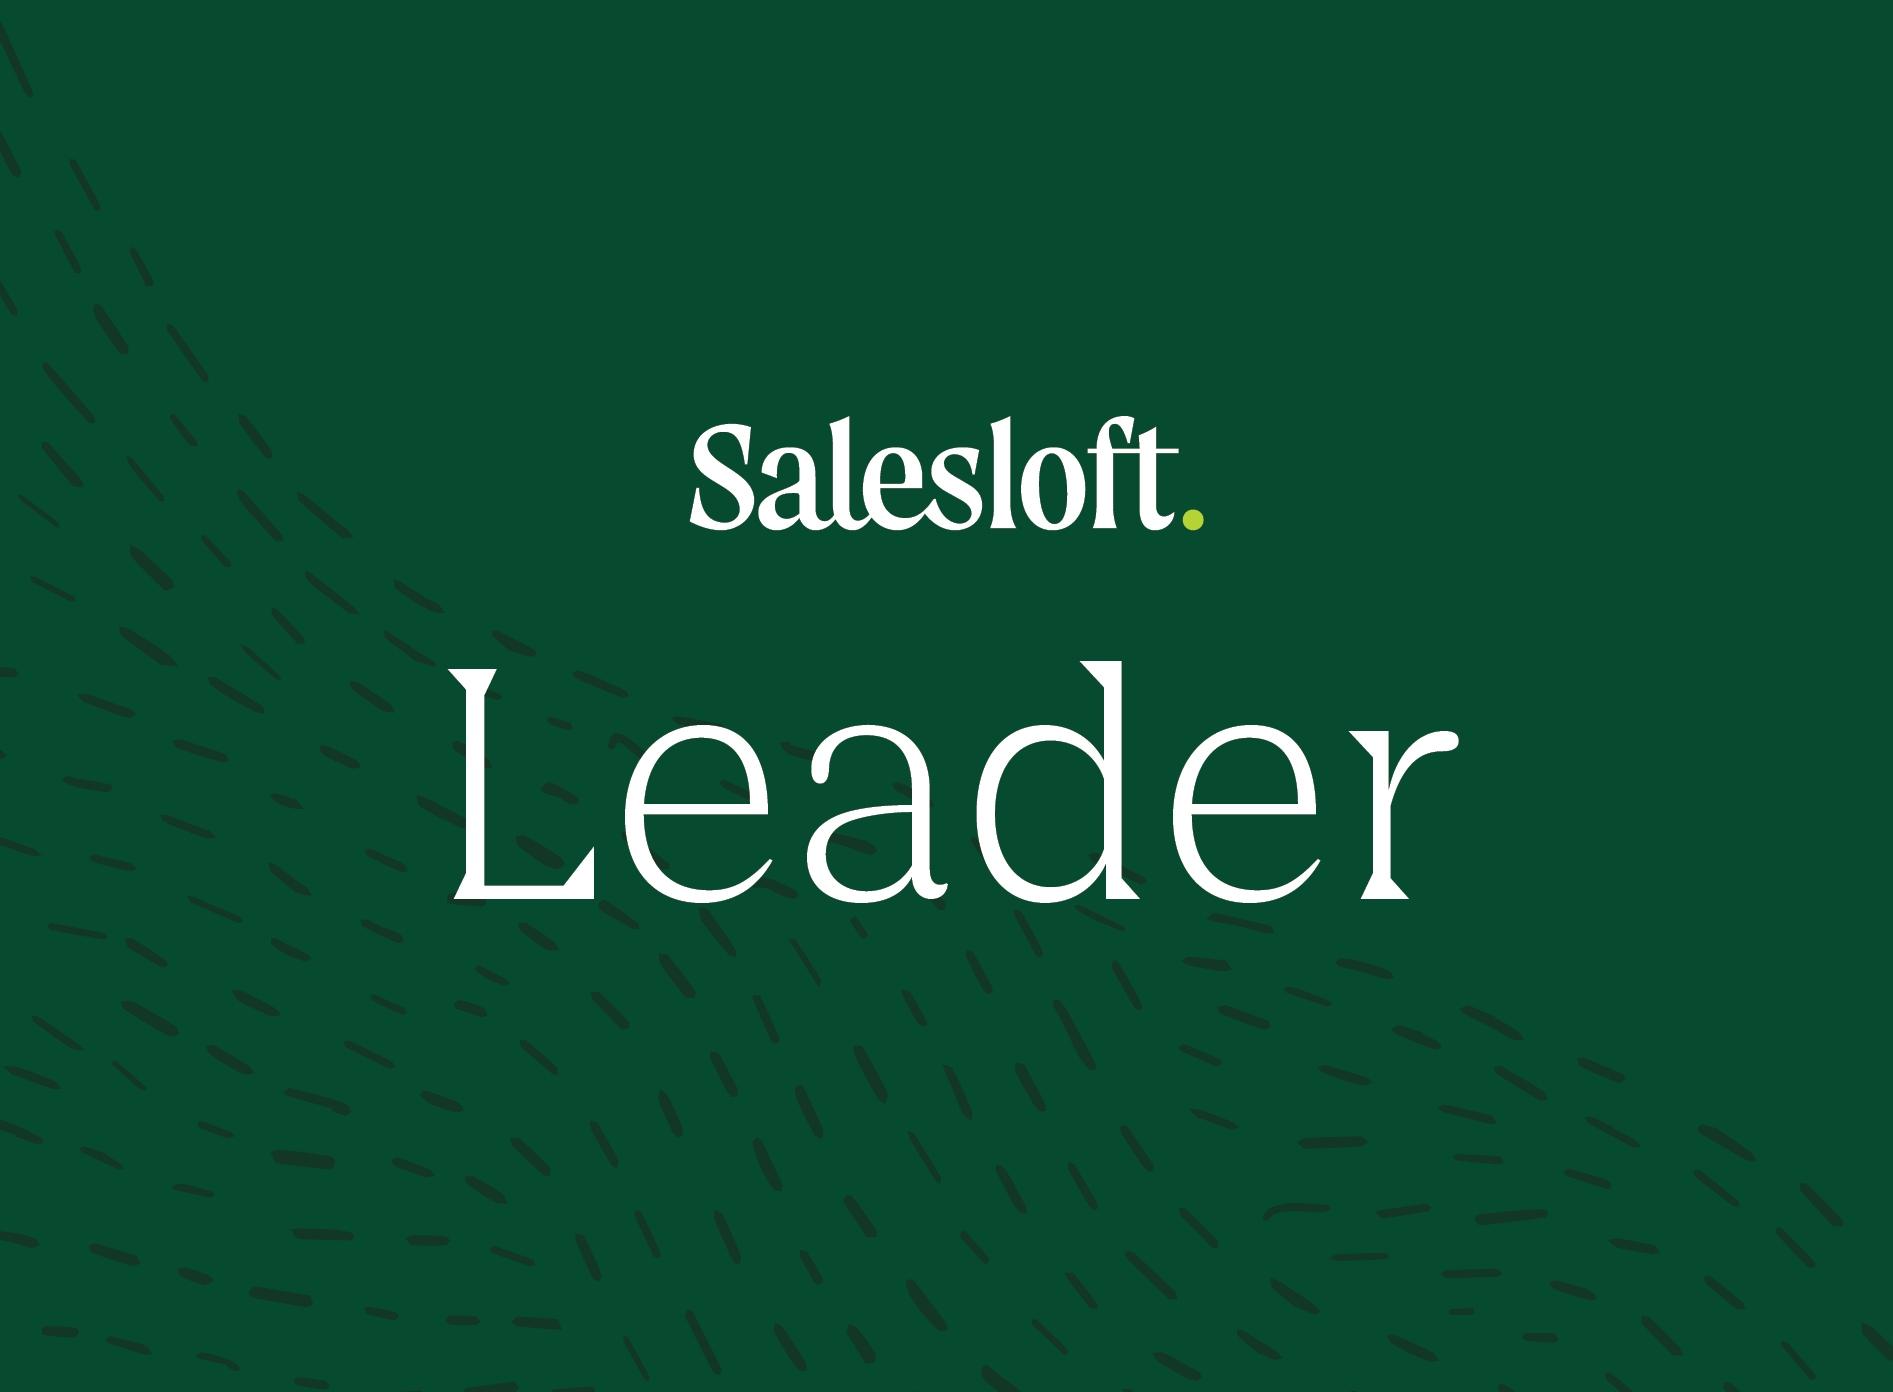 "Salesloft is a Leader"